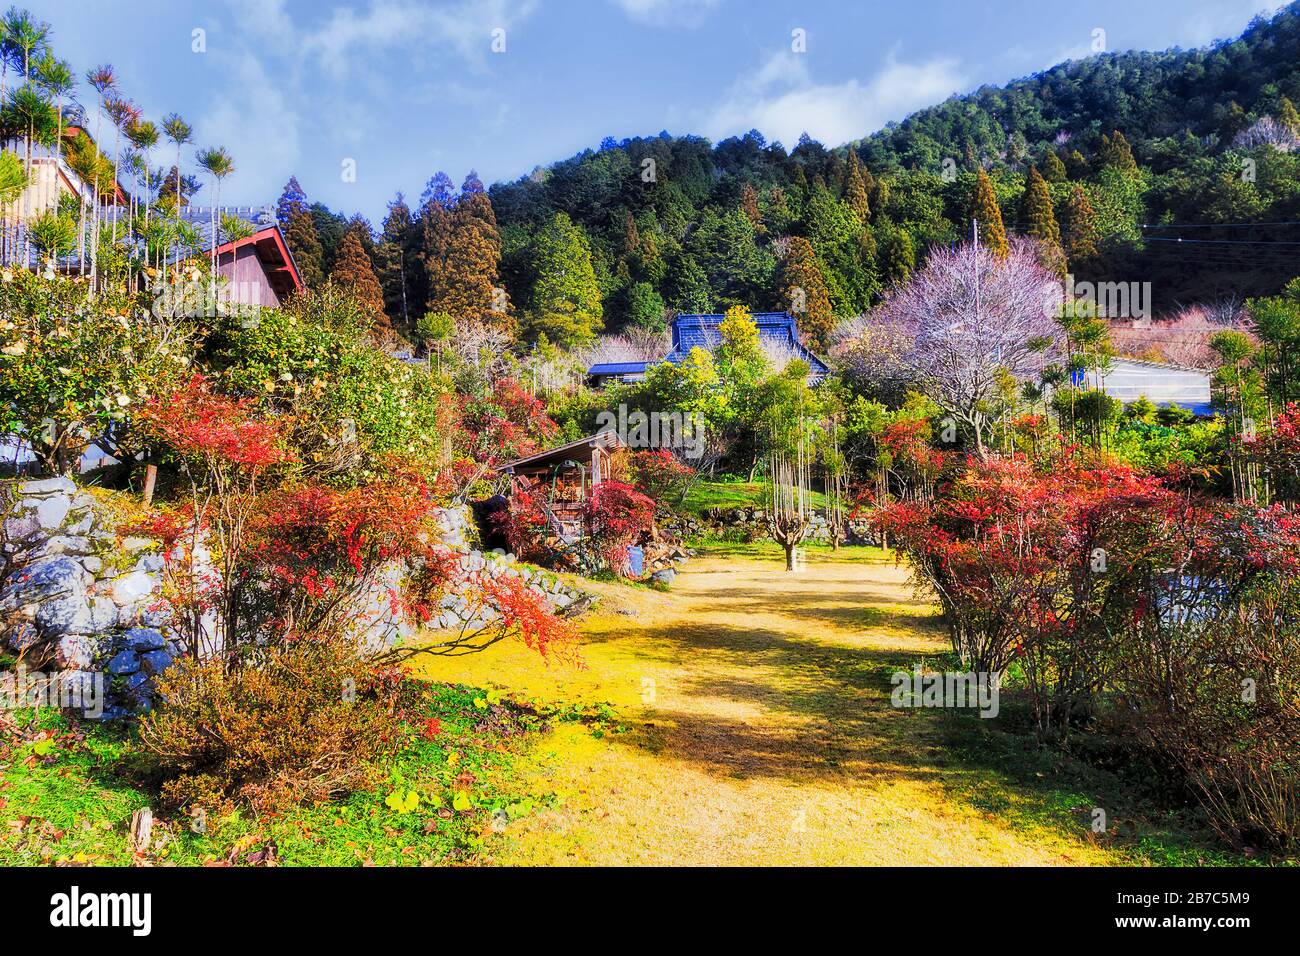 Die Landschaft der örtlichen Bauernhäuser mit Gärten und Hinterhöfen in hellem Sonnenlicht - das abgelegene Bauerndorf Ohara in Japan. Stockfoto